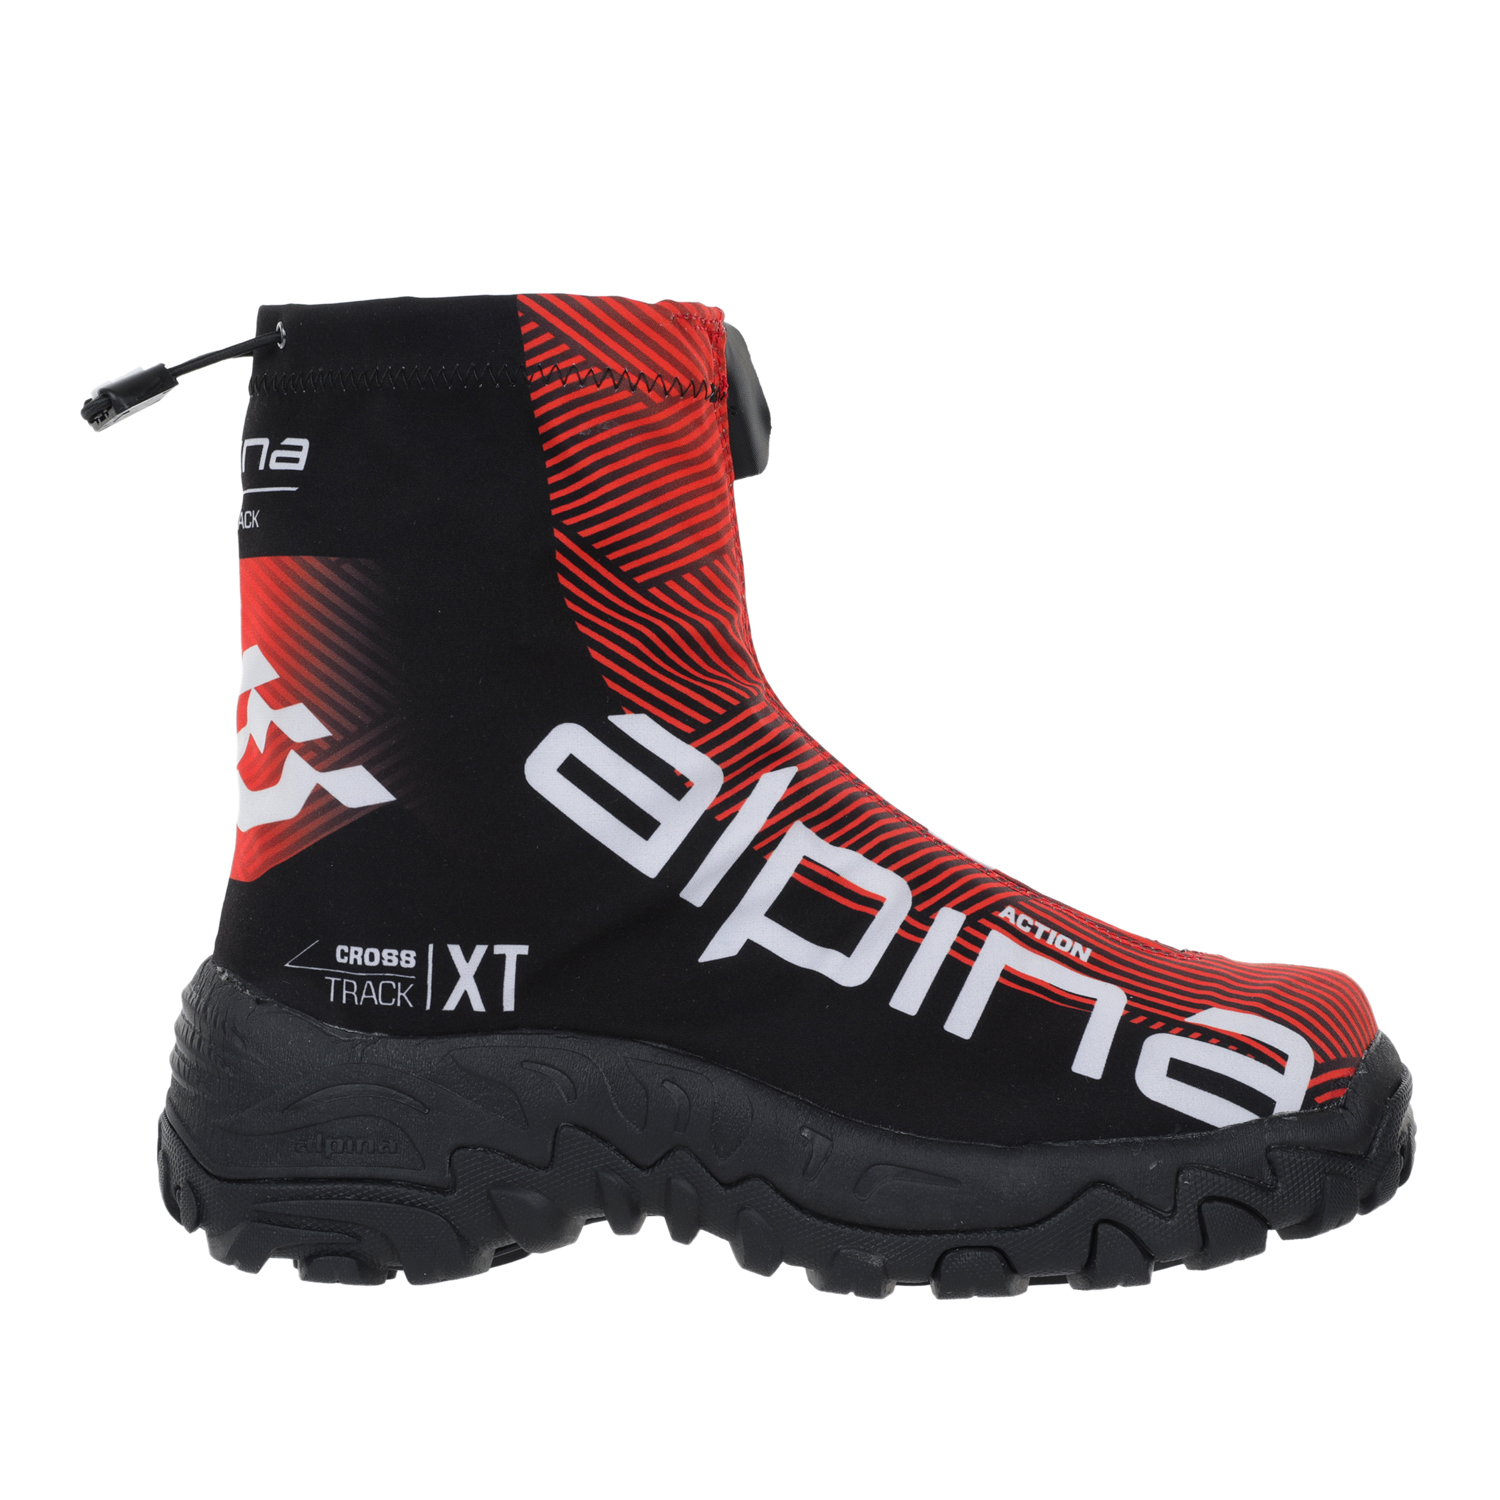 Ботинки Alpina Xt Action, red/black/white, 42 EU